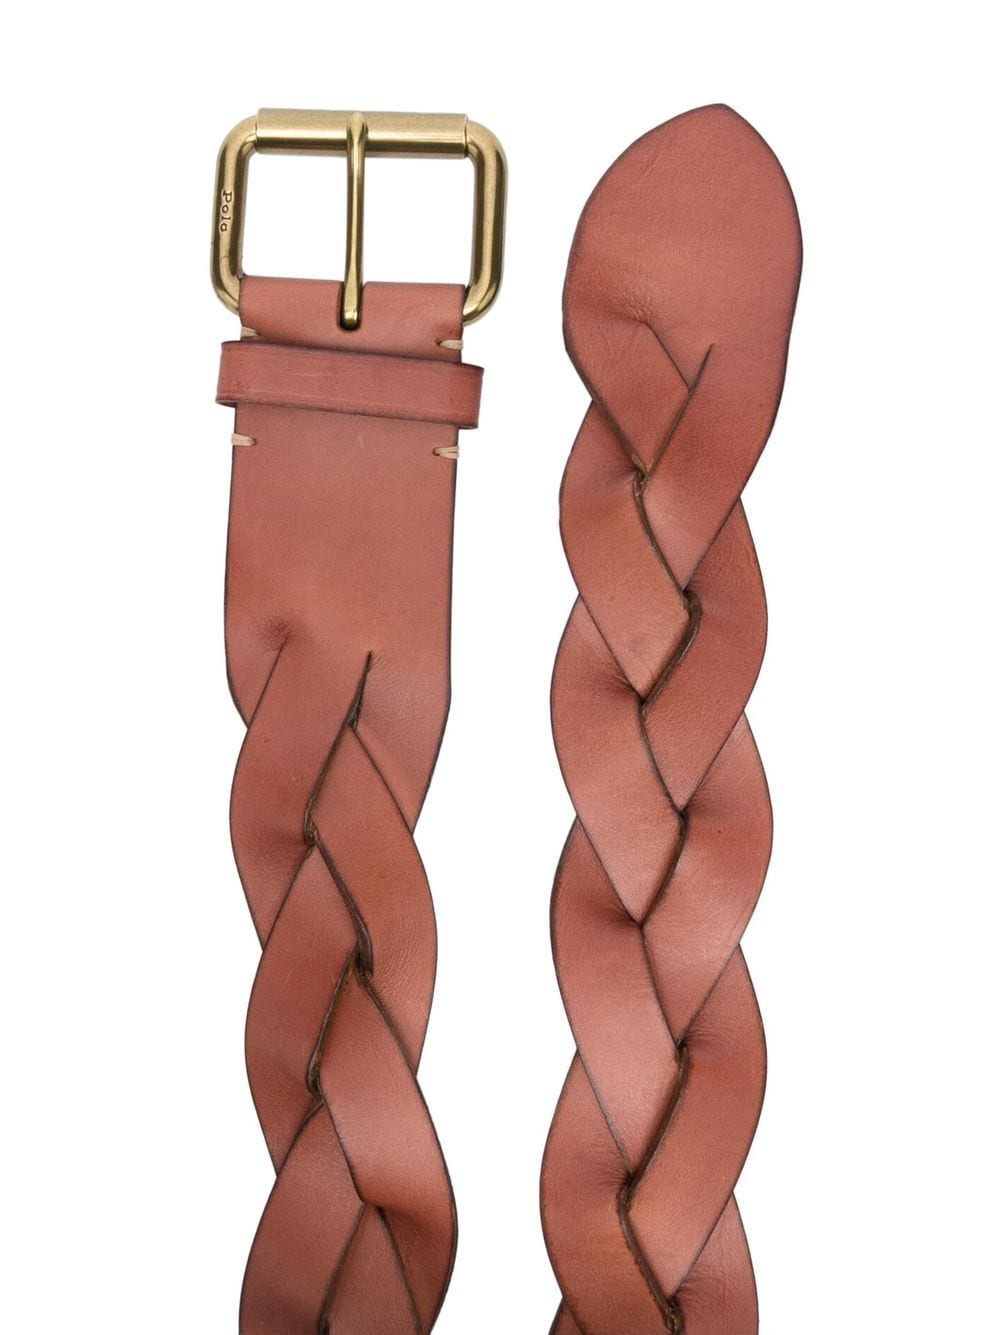 Lauren Ralph Lauren monogram-buckle Belt - Farfetch